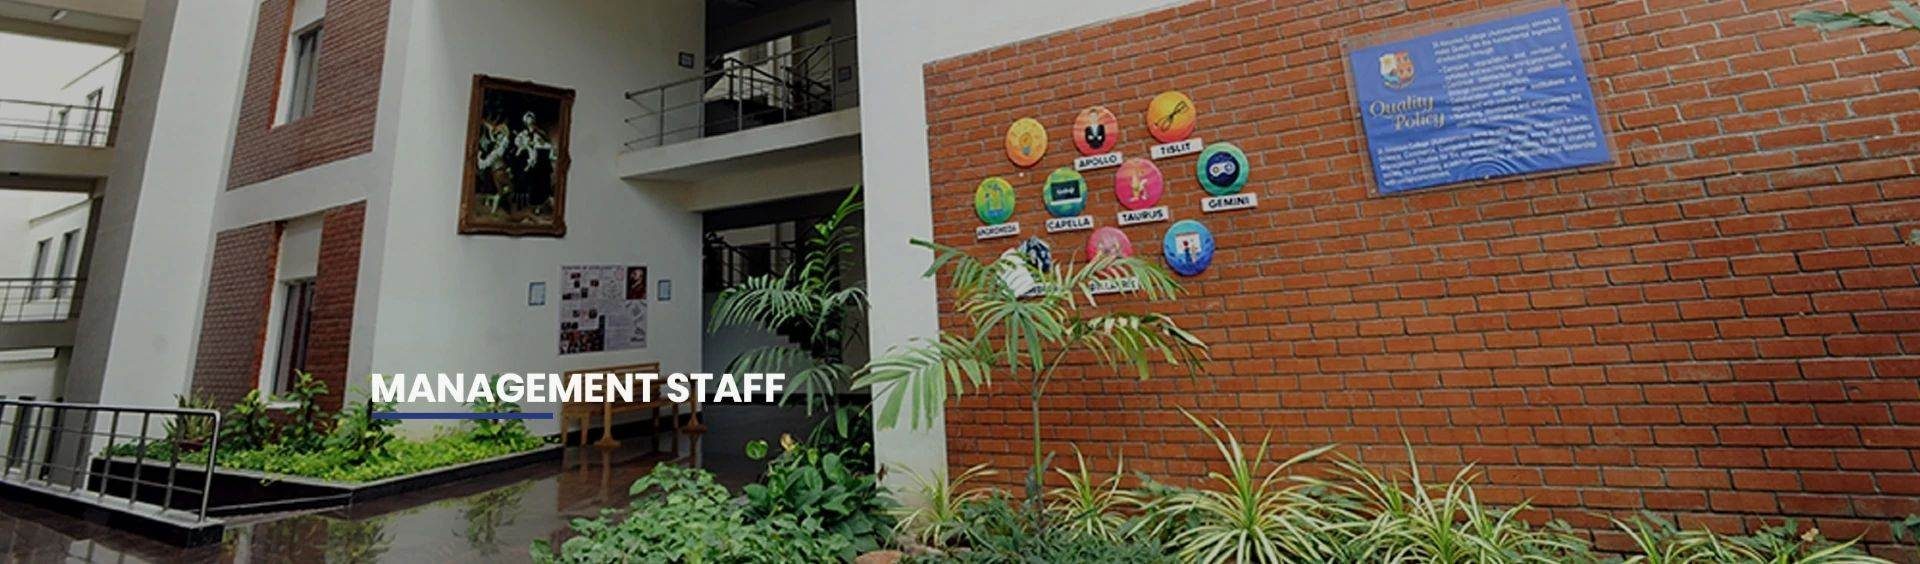 Management Staffs Banner